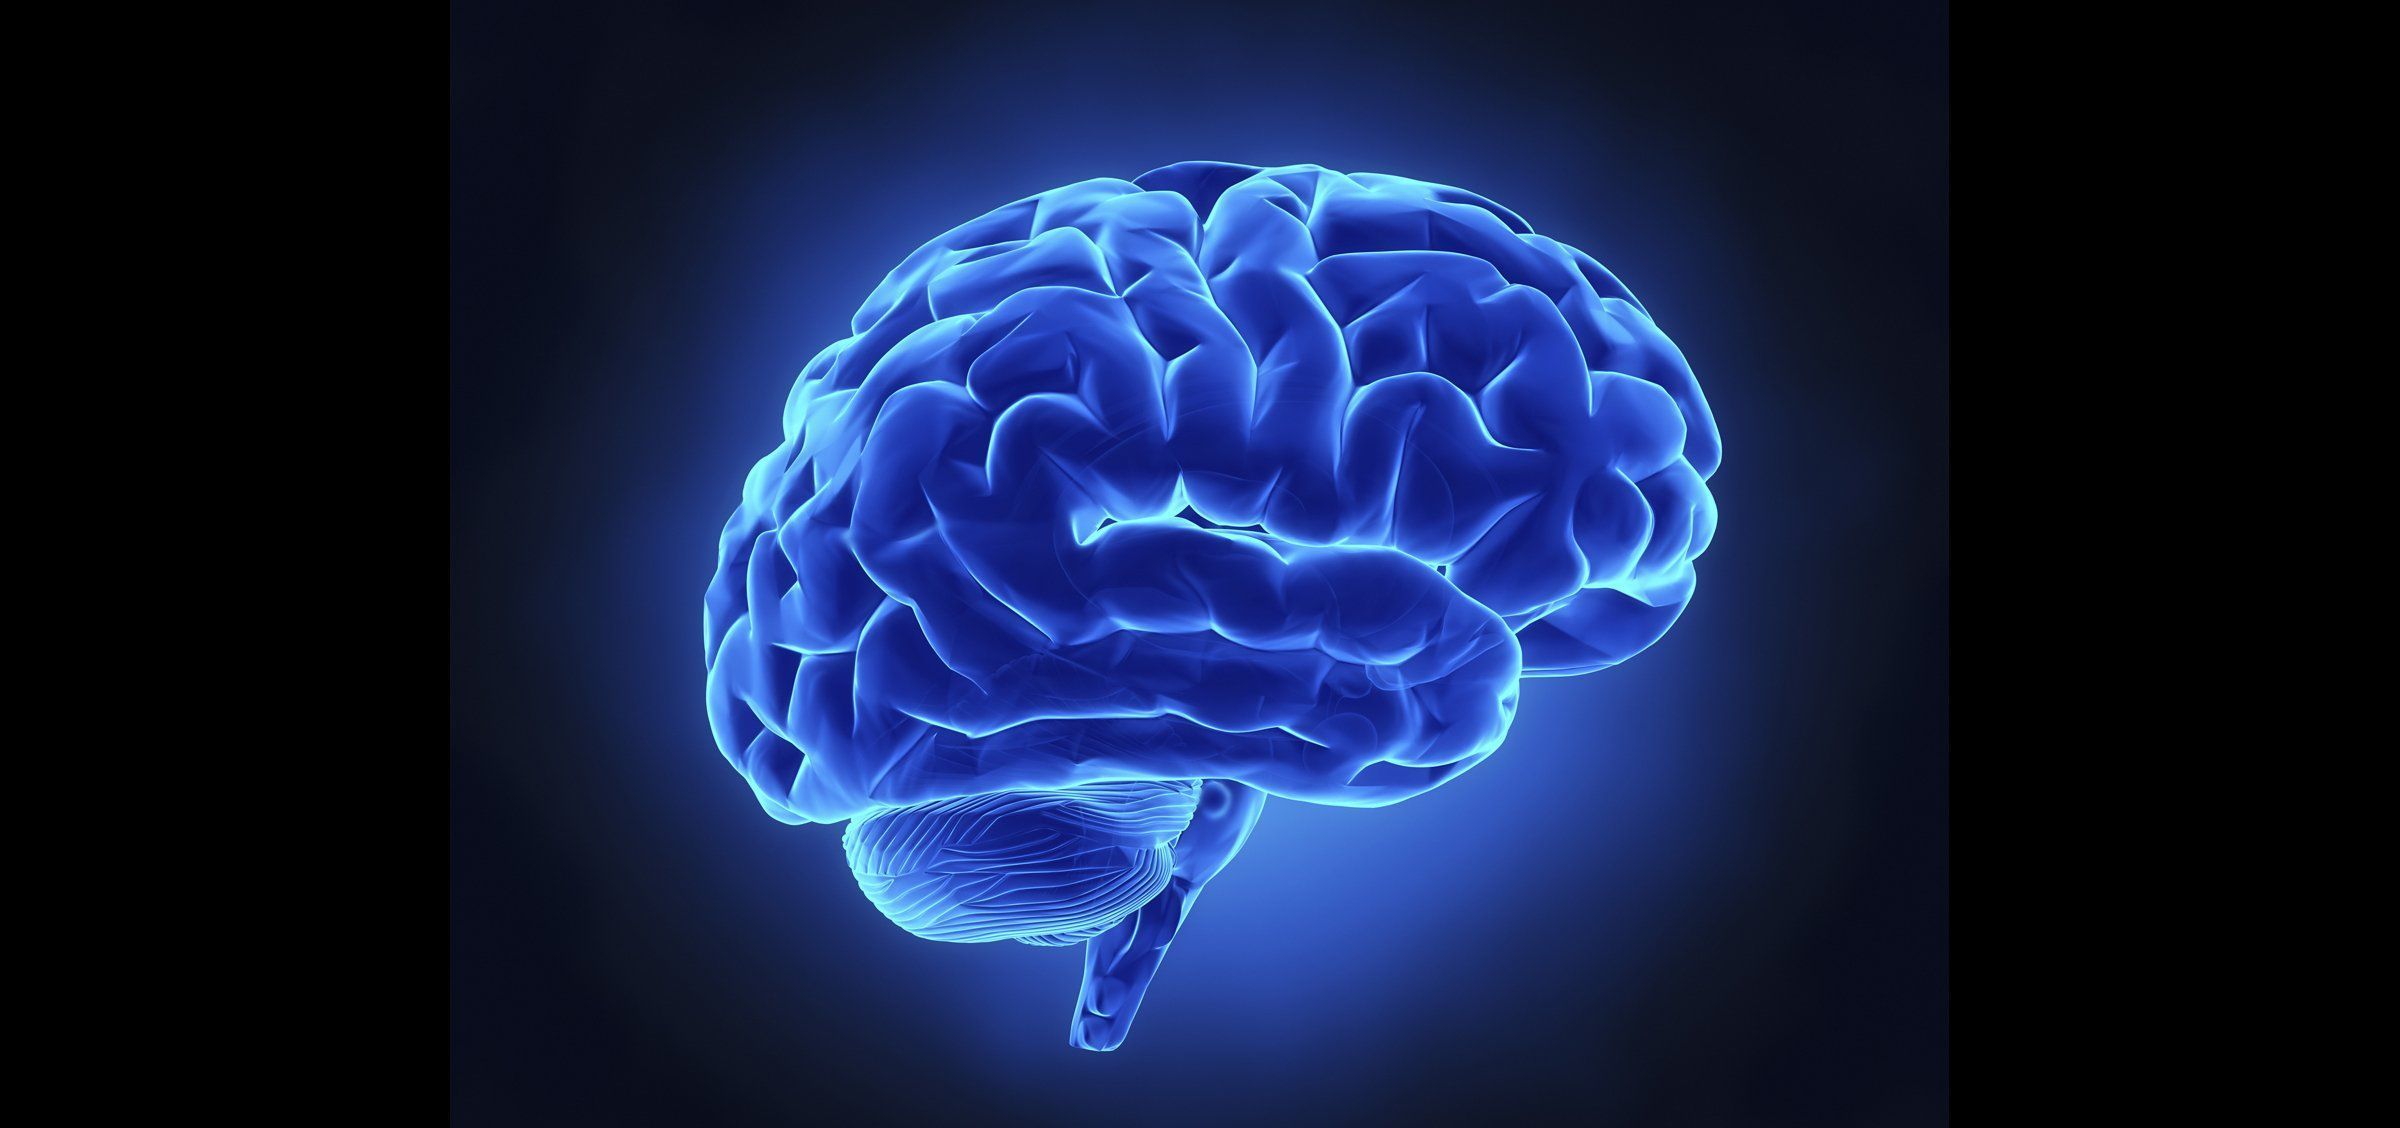 9 Mejores Imagenes De Cerebro Humano Cerebro Humano Neuroanatomia ...